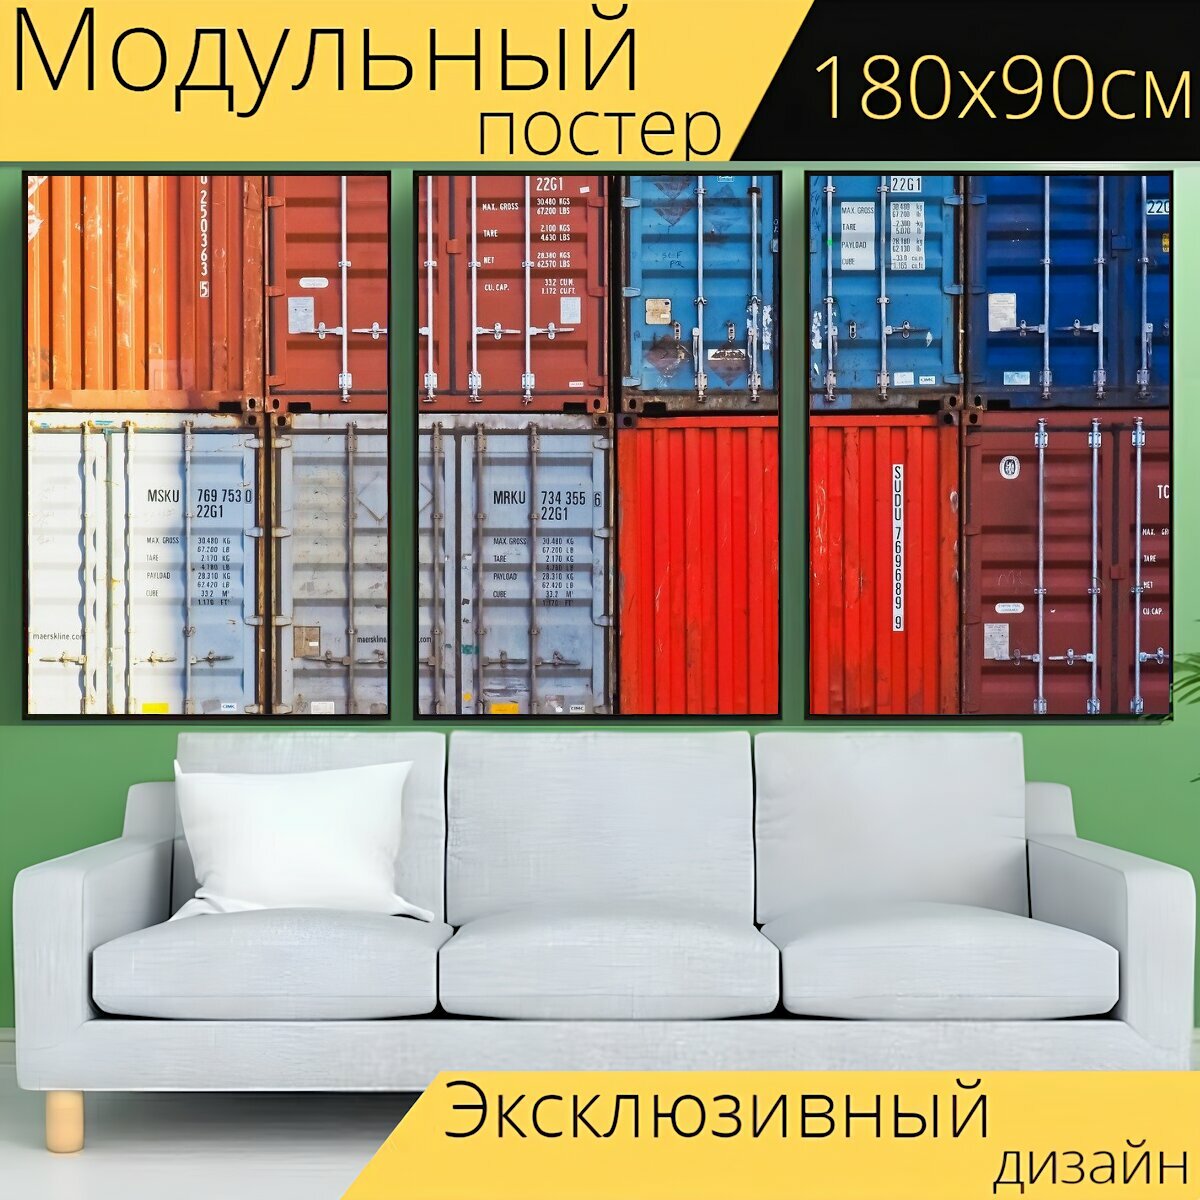 Модульный постер "Контейнер, контейнерный порт, порт" 180 x 90 см. для интерьера